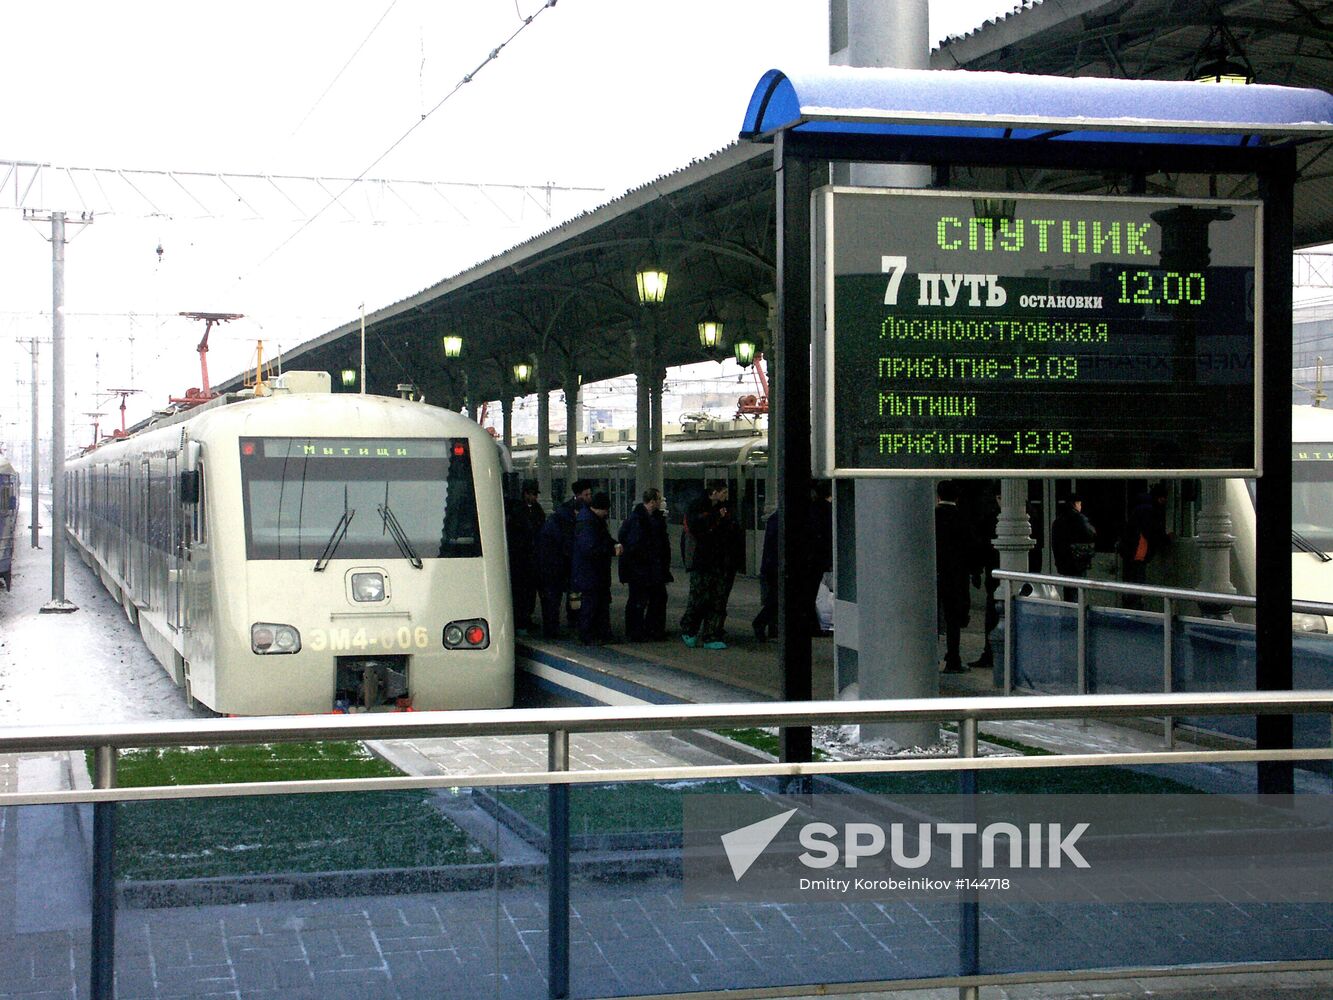 EXPRESS TRAIN 'SPUTNIK'